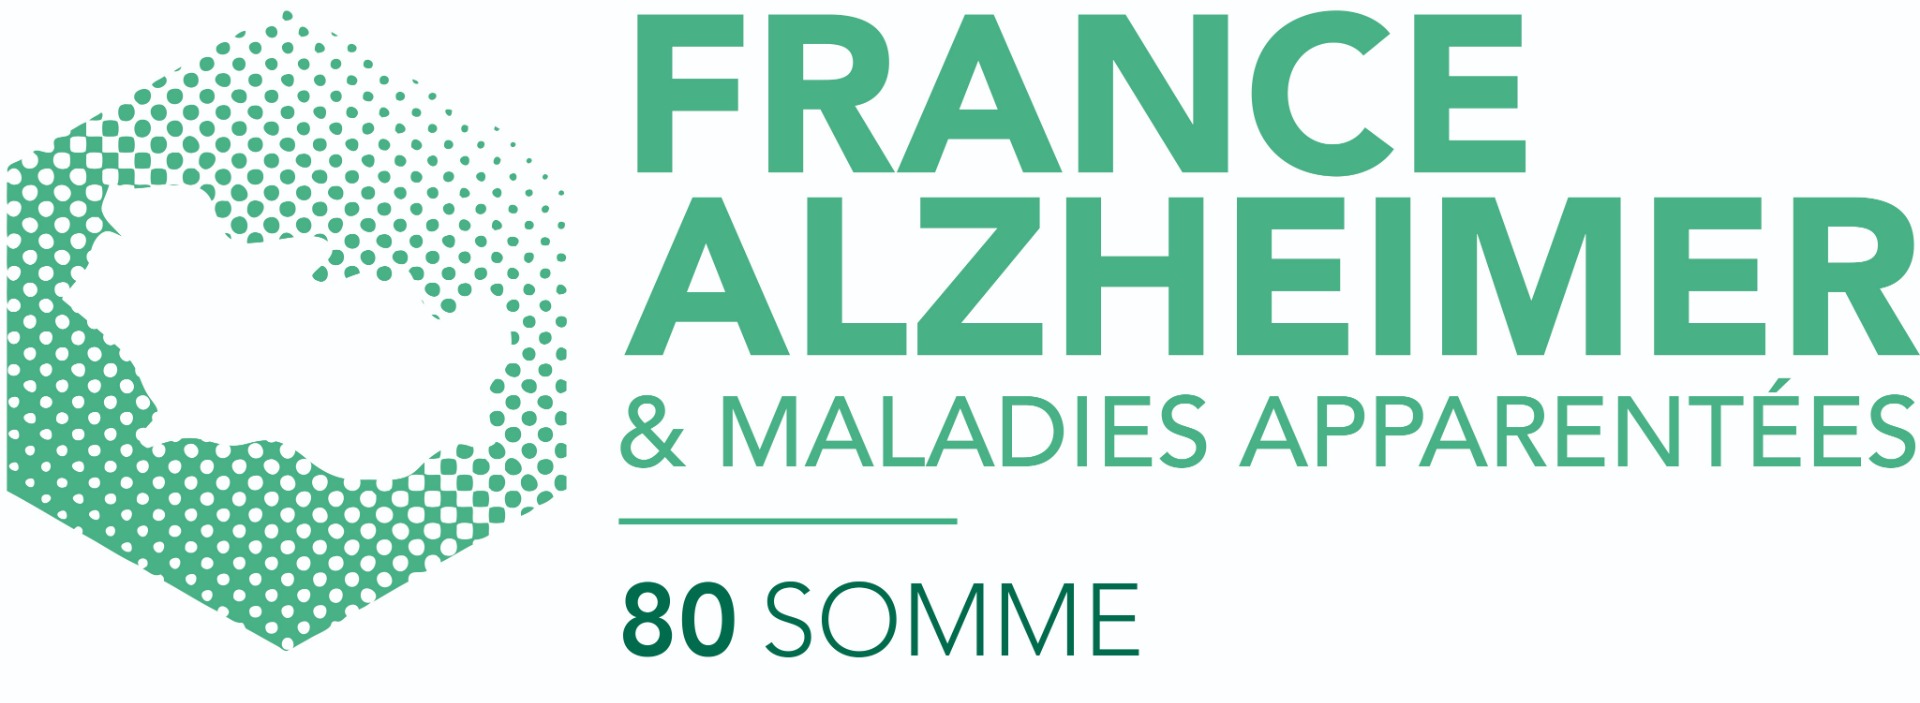 Photo de France Alzheimer Somme à AMIENS